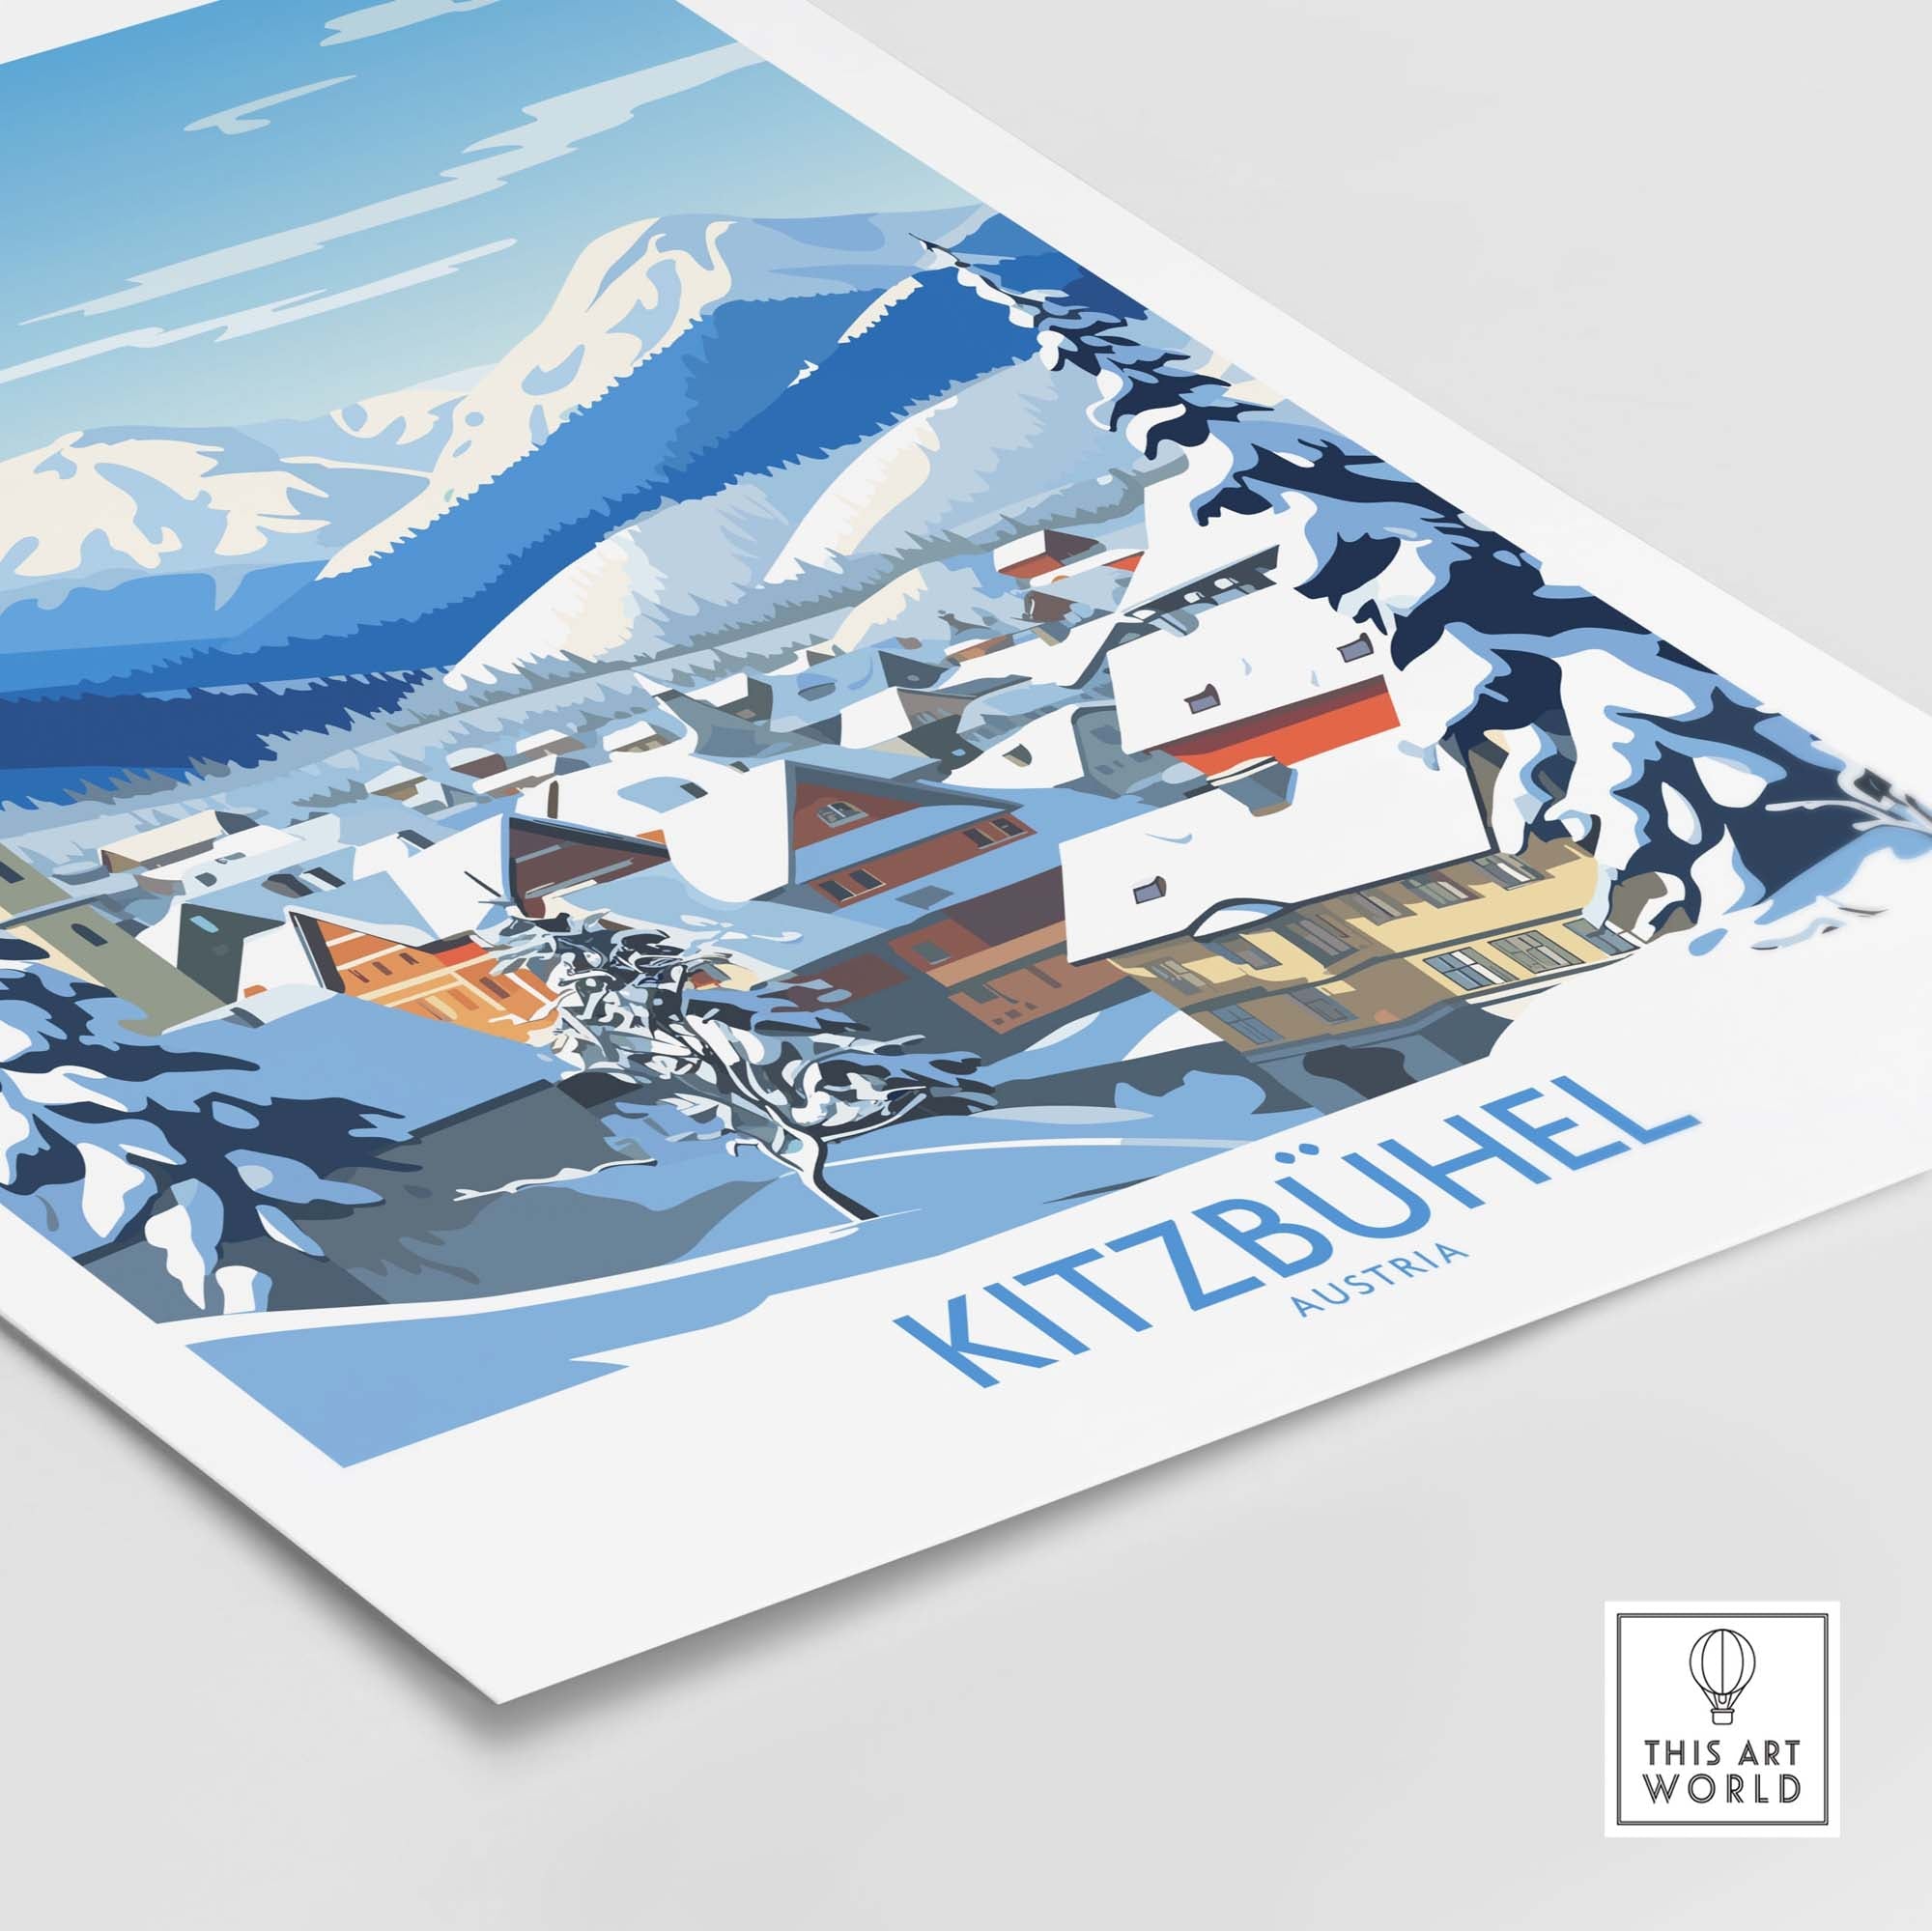 Kitzbuhel Austria Art Print